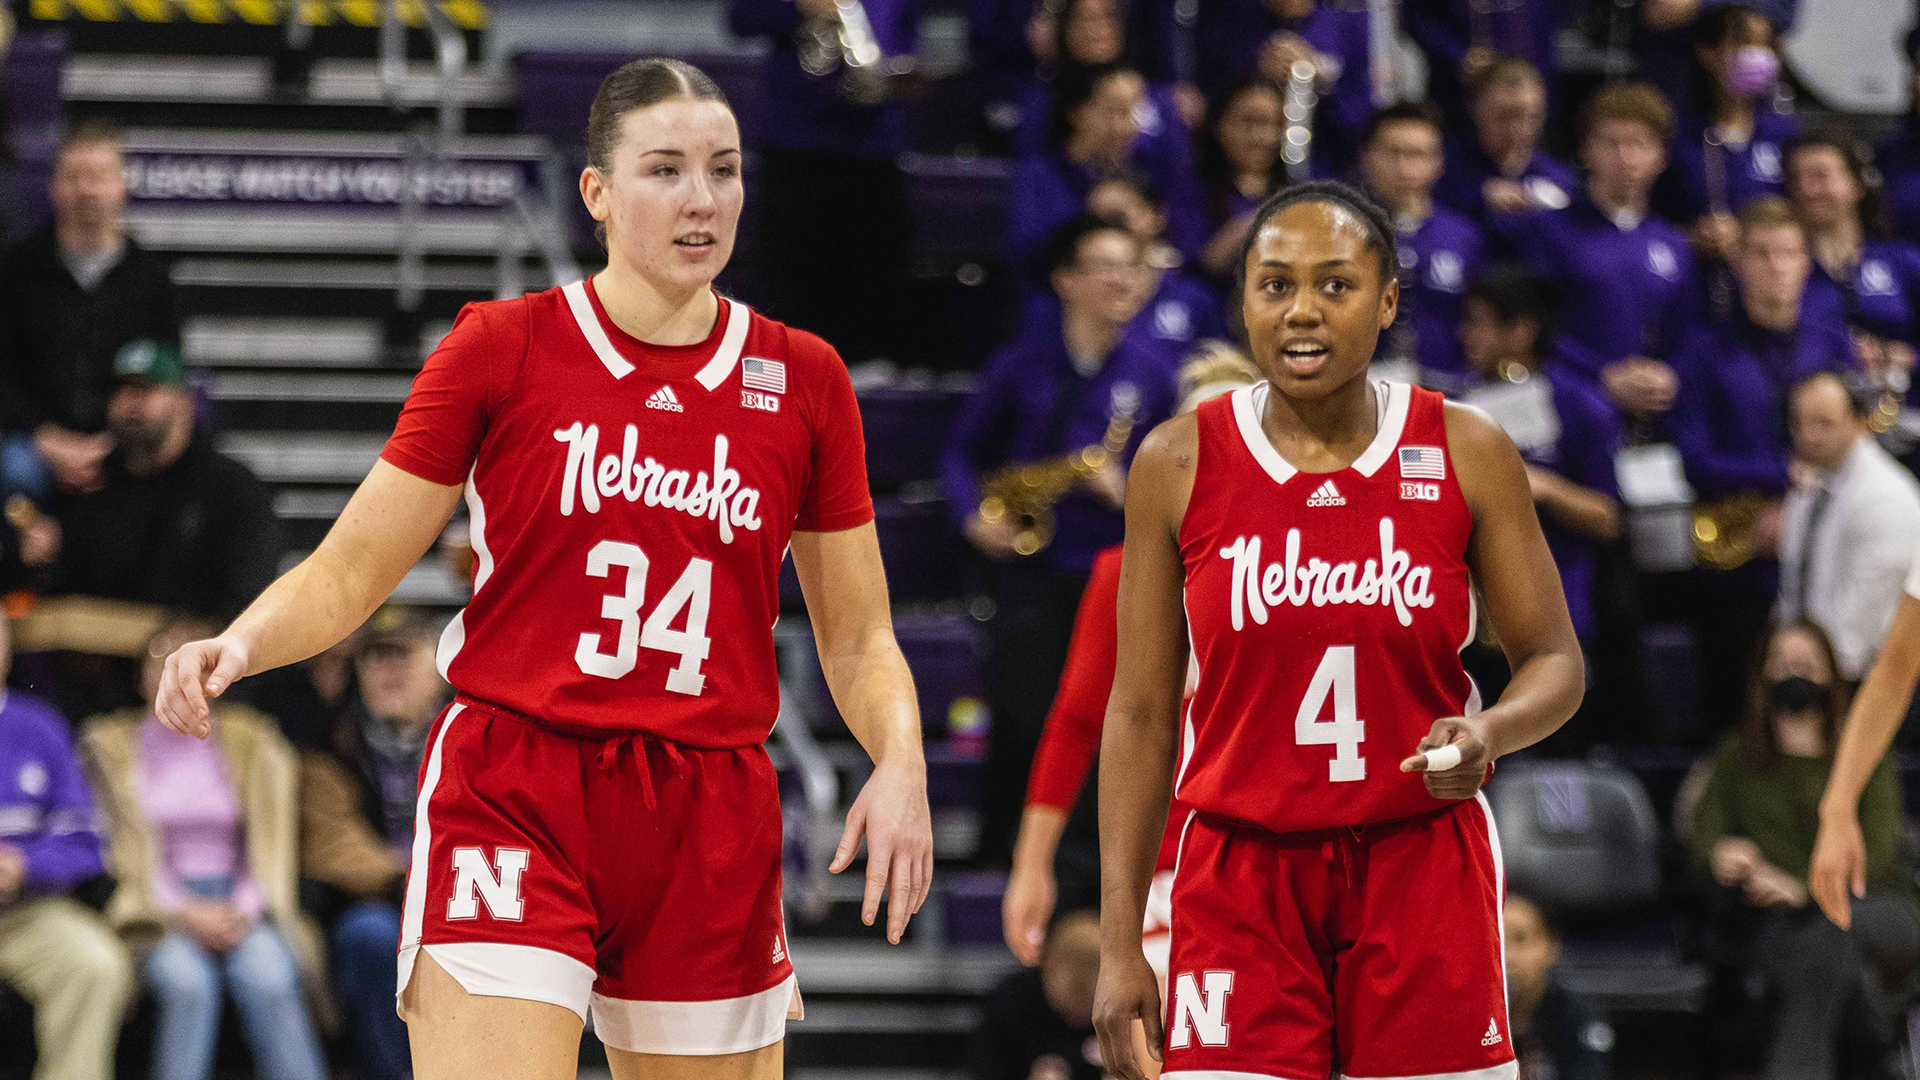 Thursday's basketball: No. 7 Wisconsin edges Nebraska in OT